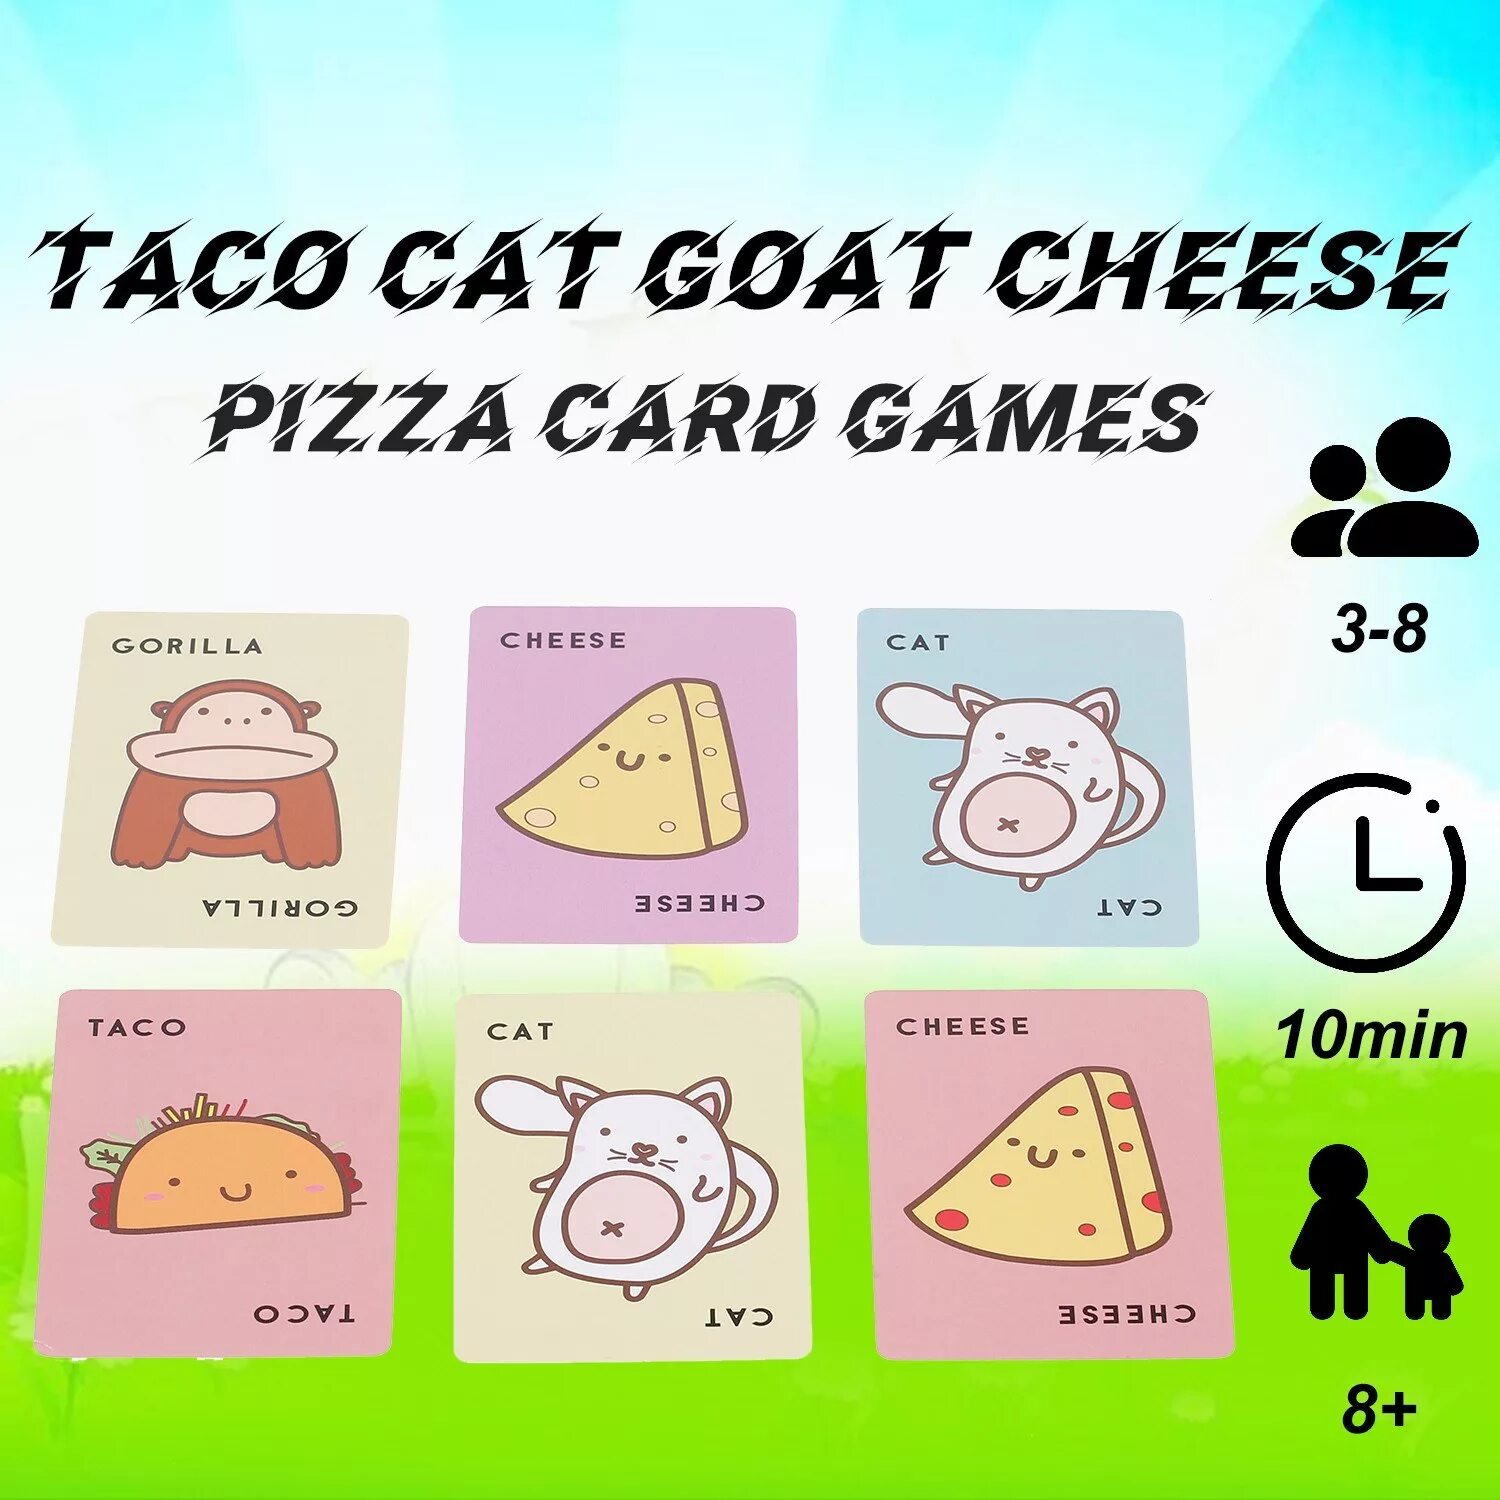 Тако сыр коза. Тако кот коза сыр пицца. Игра кот коза сыр пицца. Cheese Card game. Pizza Card.